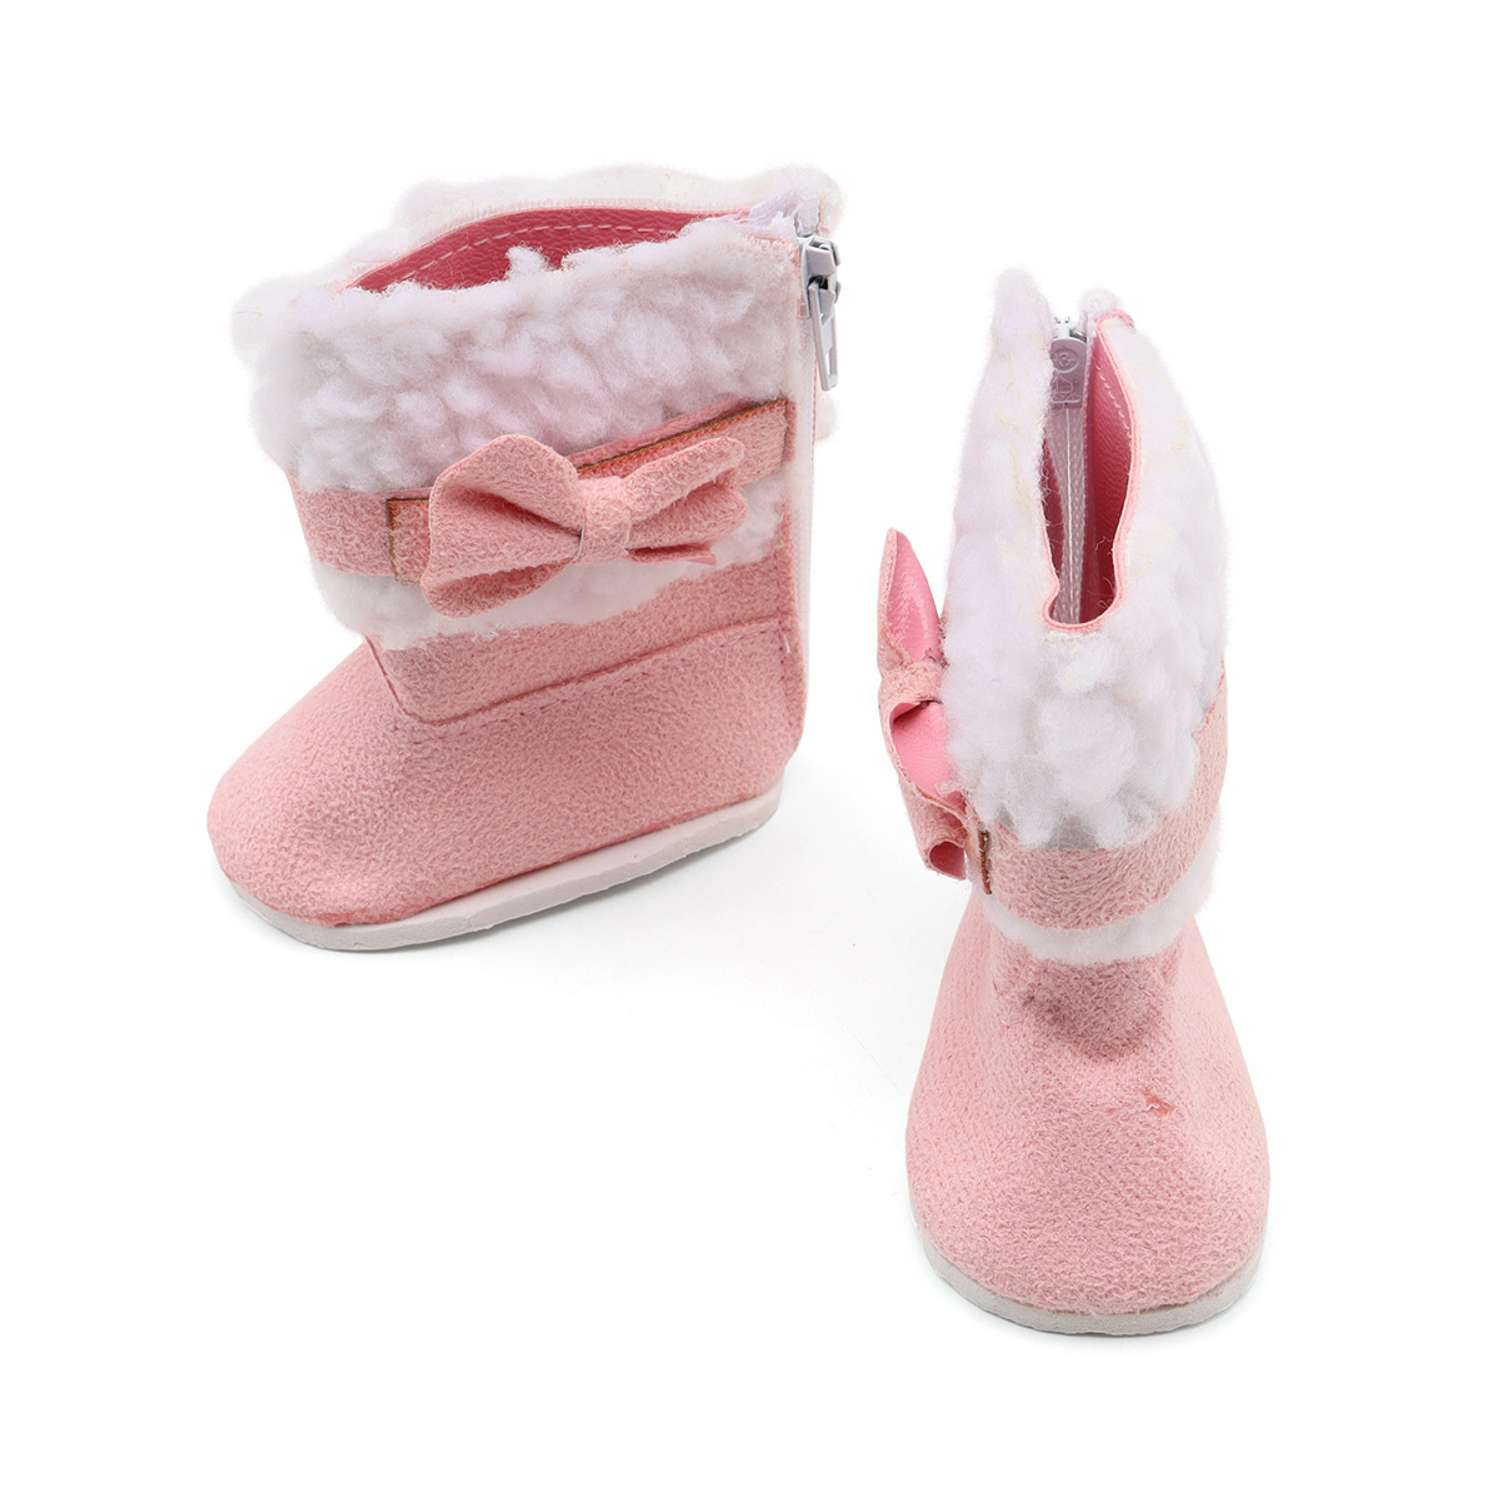 Обувь для кукол Astra Craft игрушек сапожки 7х3.5х7.5 см 1 пара 7734782 - фото 1